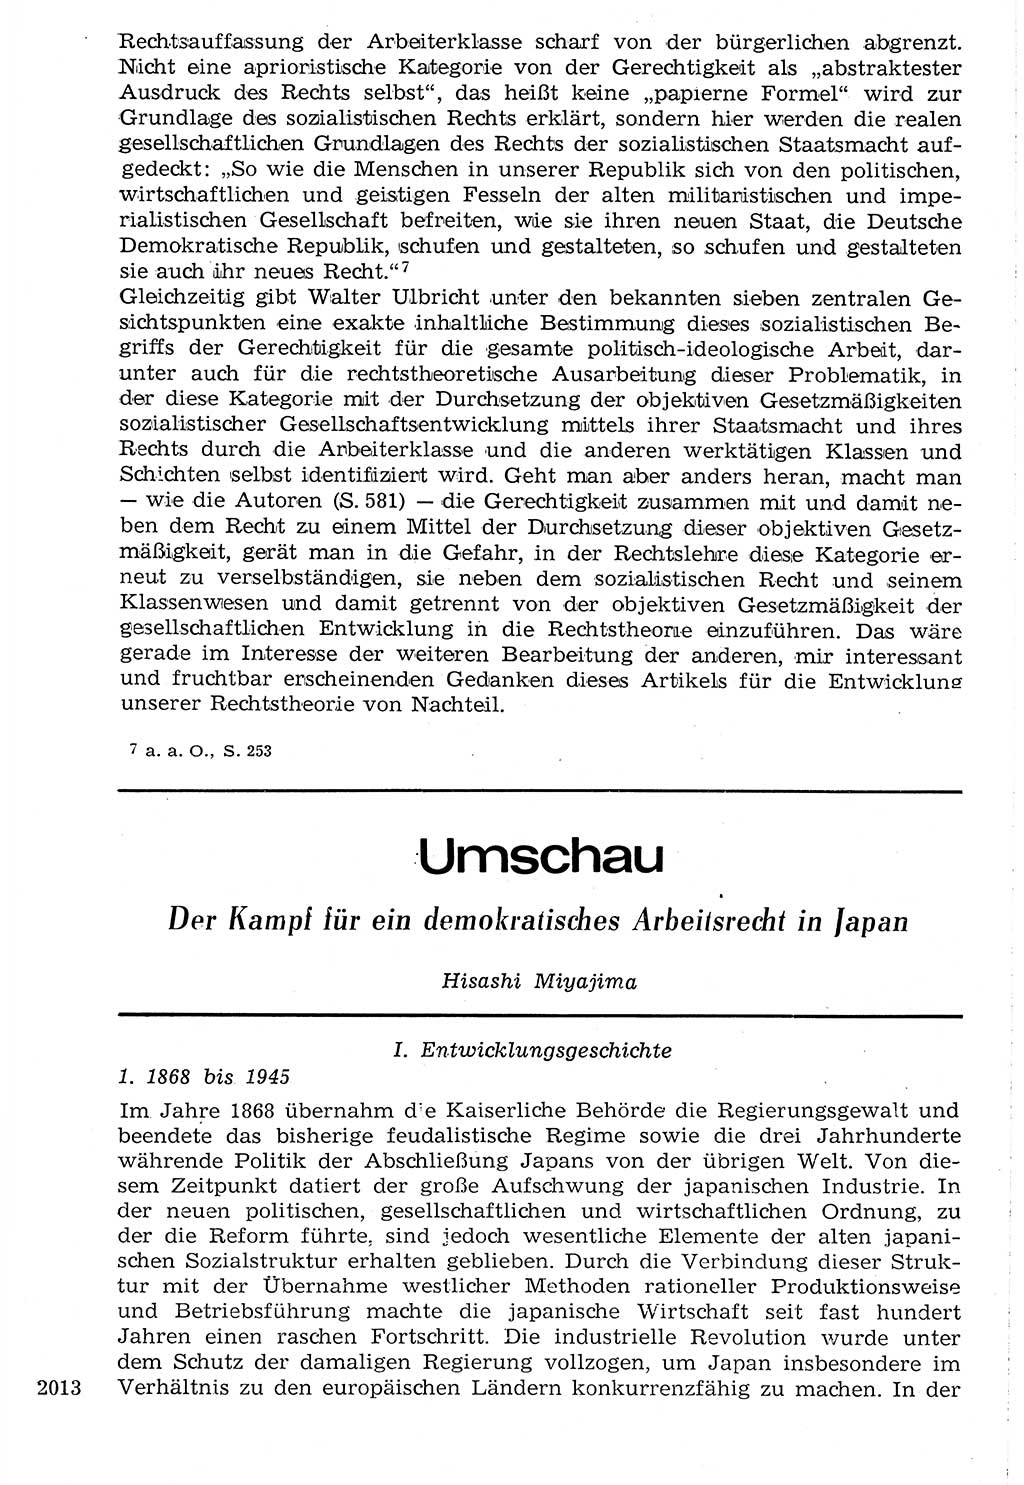 Staat und Recht (StuR), 17. Jahrgang [Deutsche Demokratische Republik (DDR)] 1968, Seite 2013 (StuR DDR 1968, S. 2013)